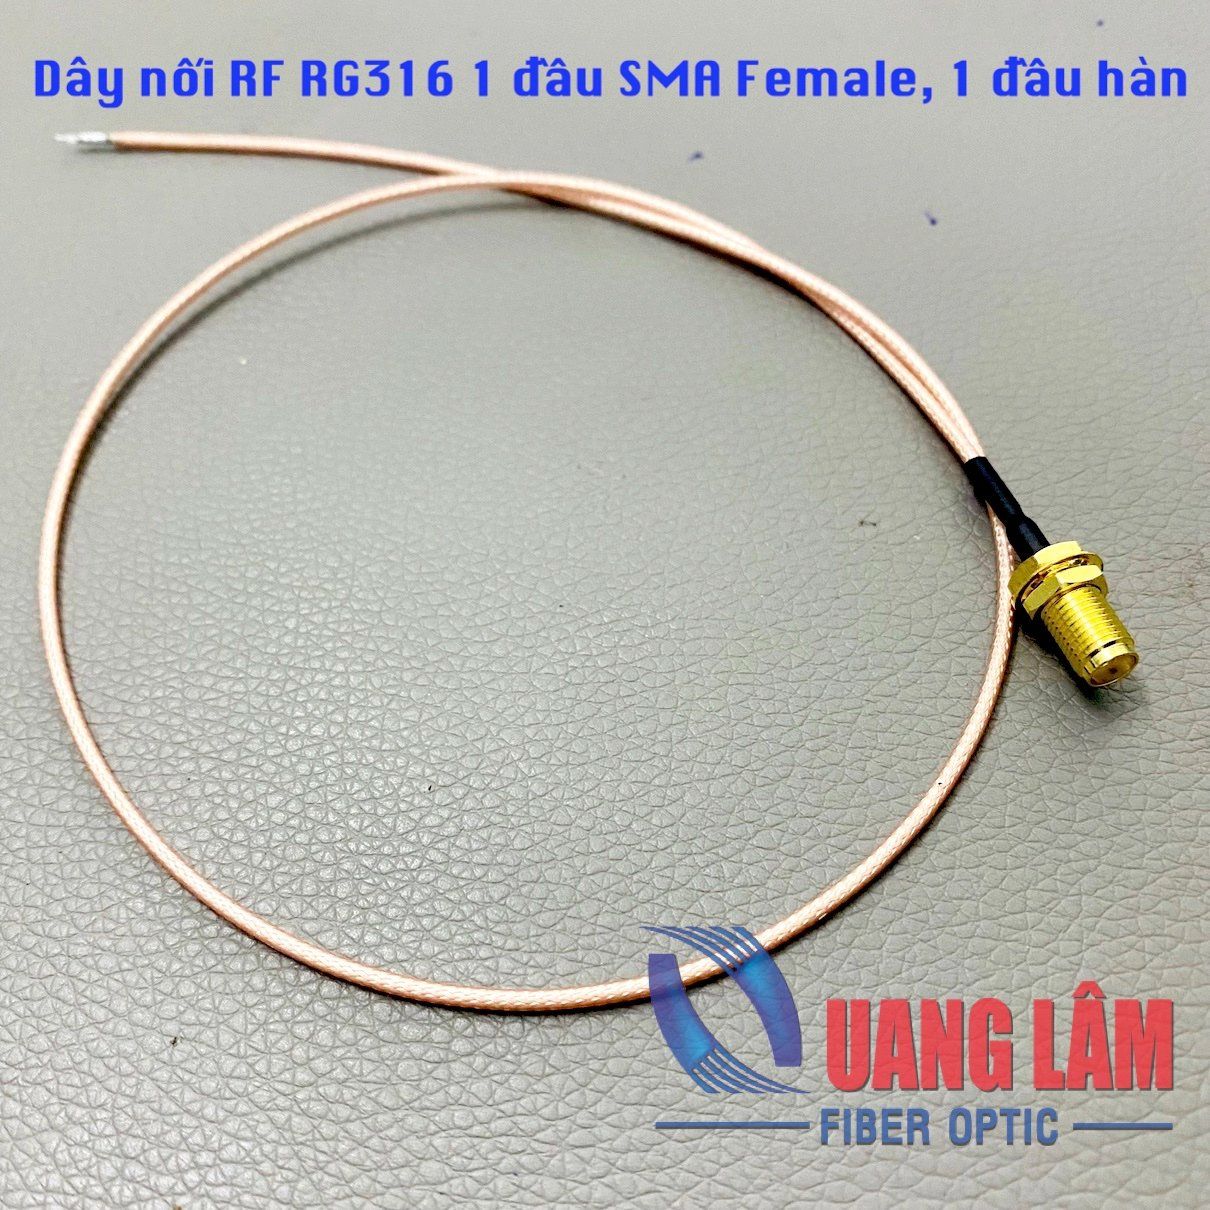 Dây nối RF RG316 1 đầu SMA Female, 1 đầu hàn